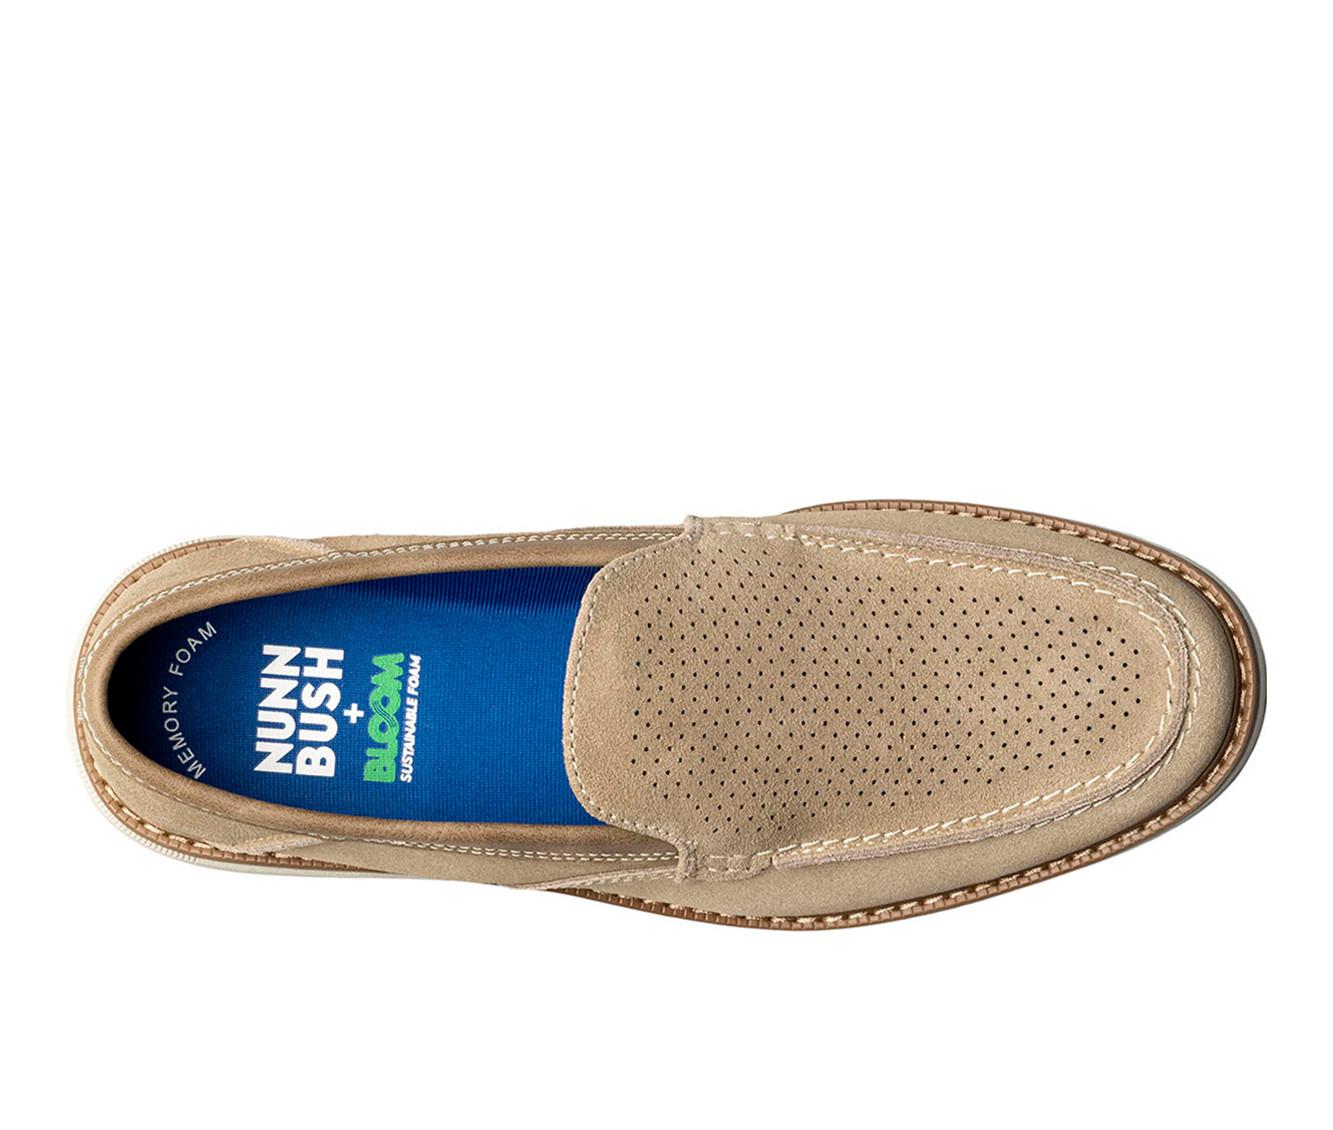 Men's Nunn Bush Otto EZ Moc Toe Slip-On Shoes